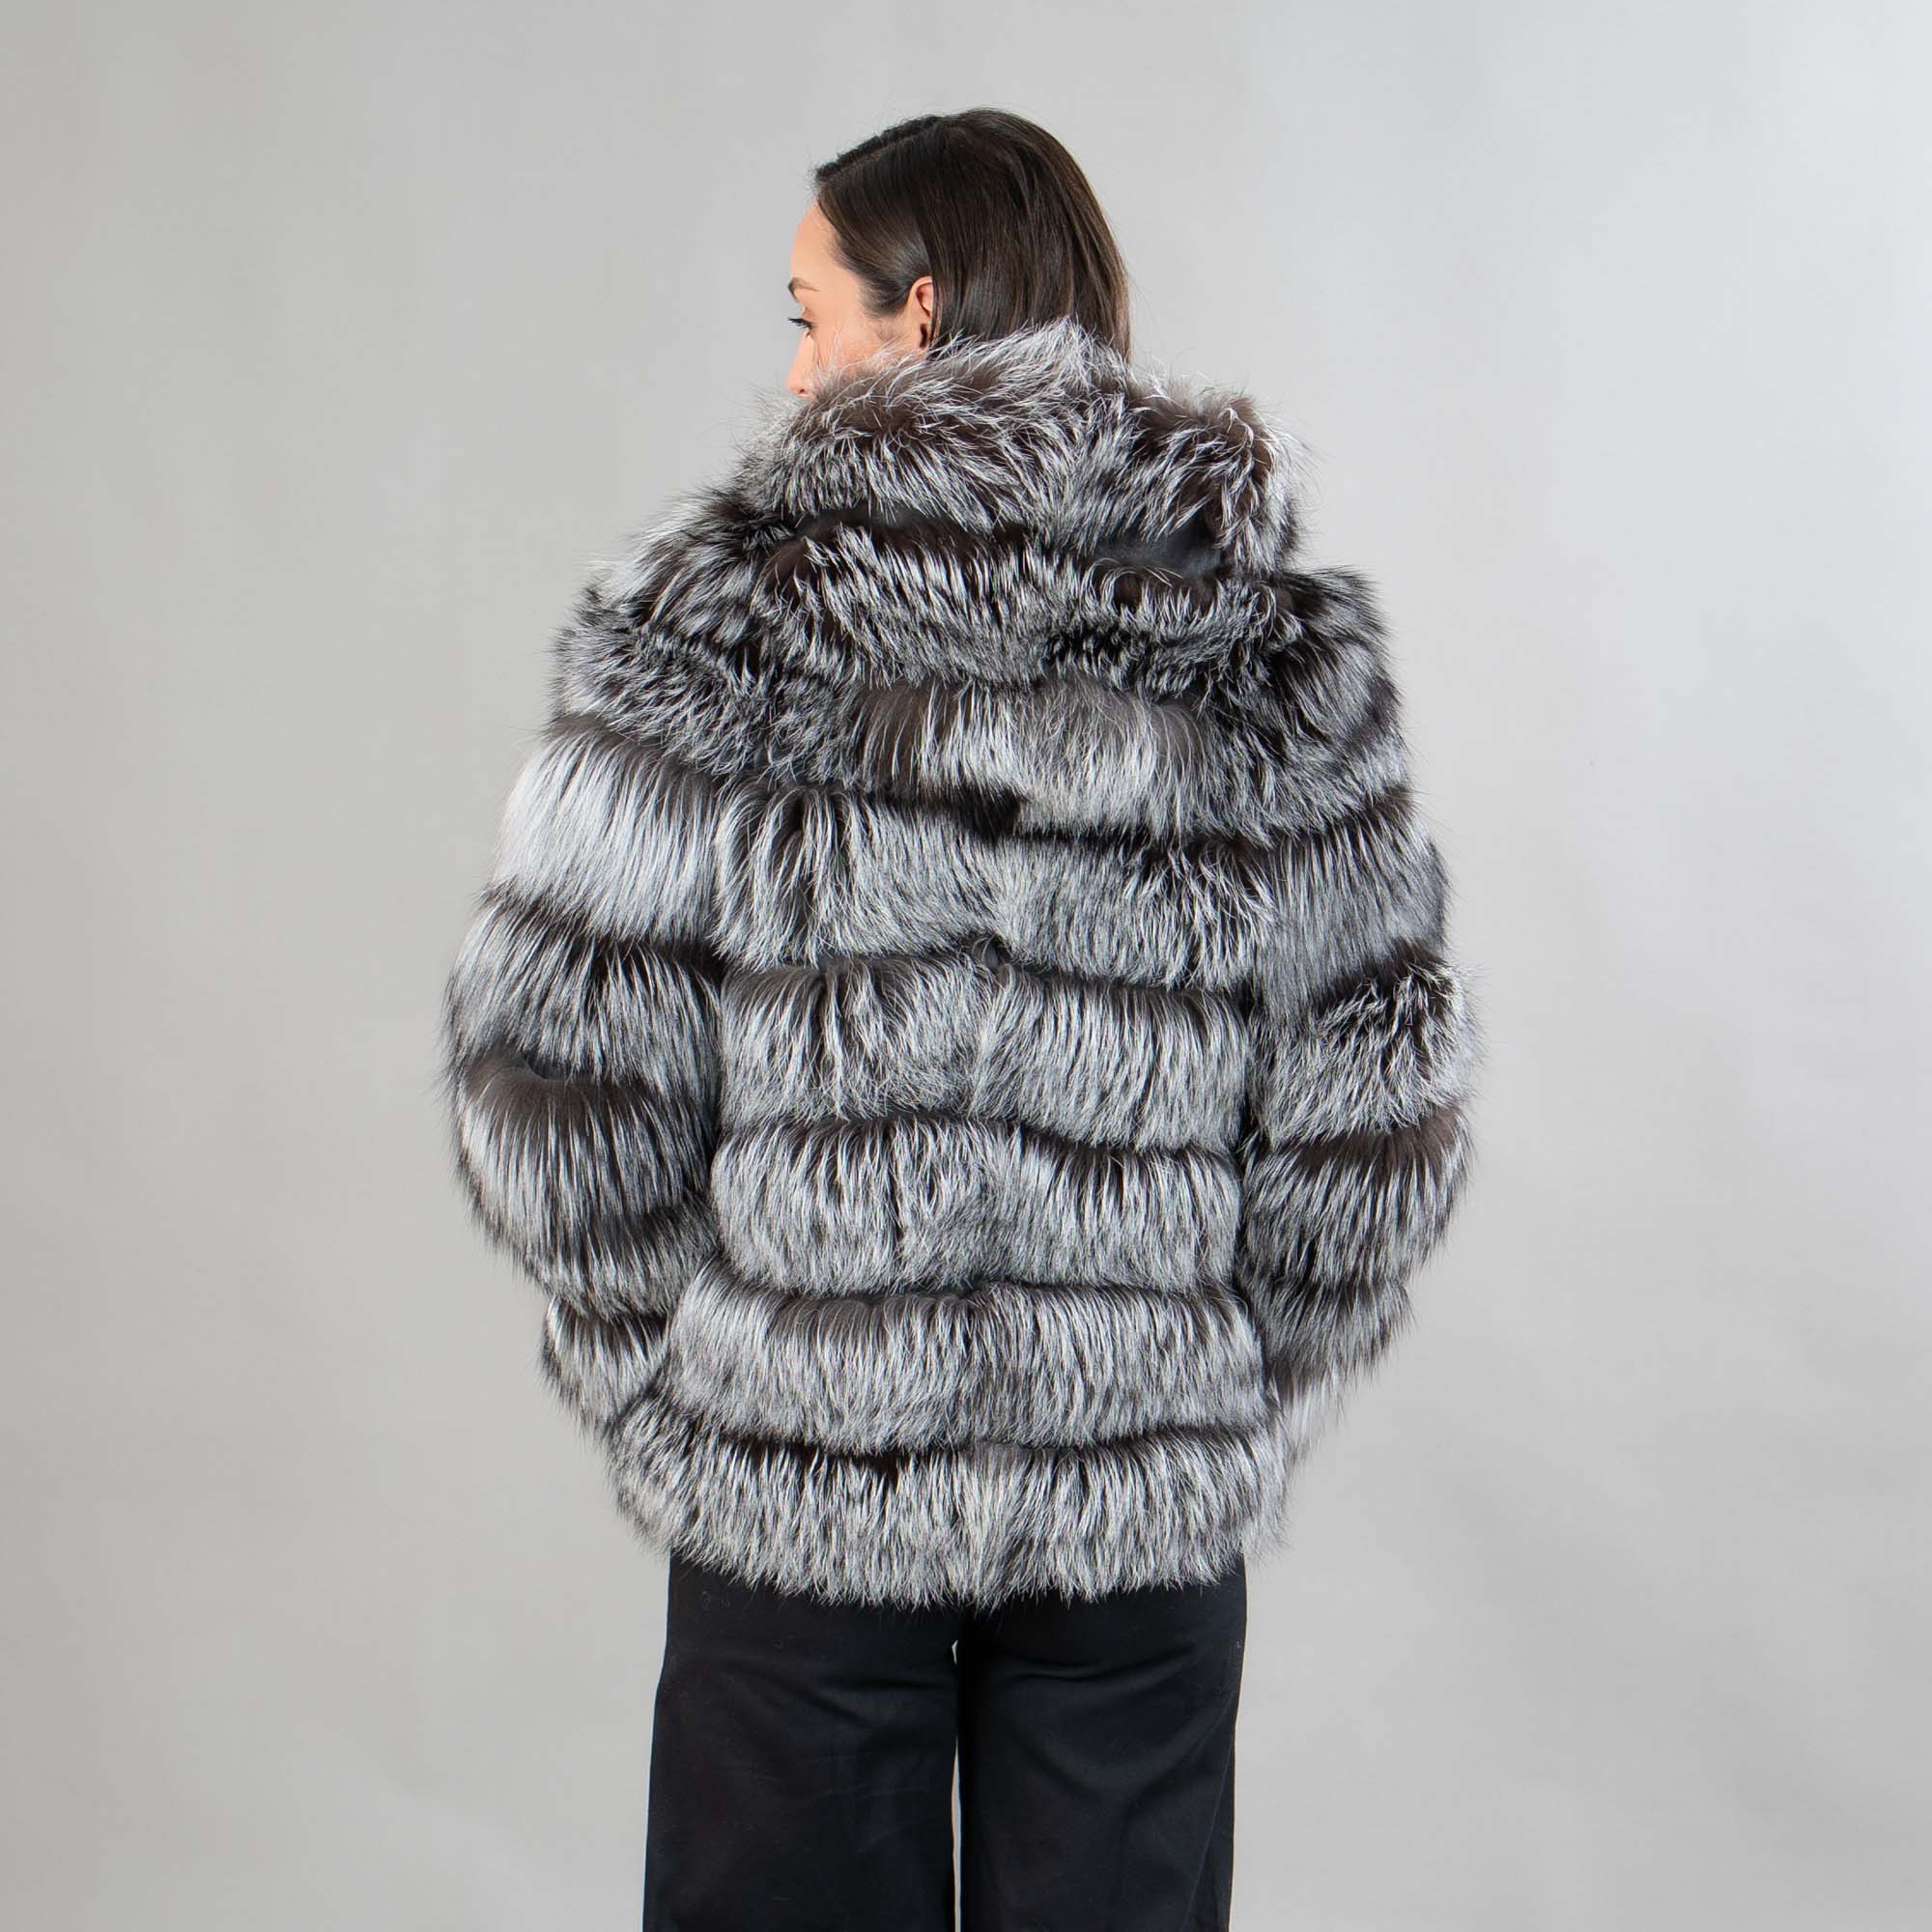 Fox fur polymorphic coat in silver color